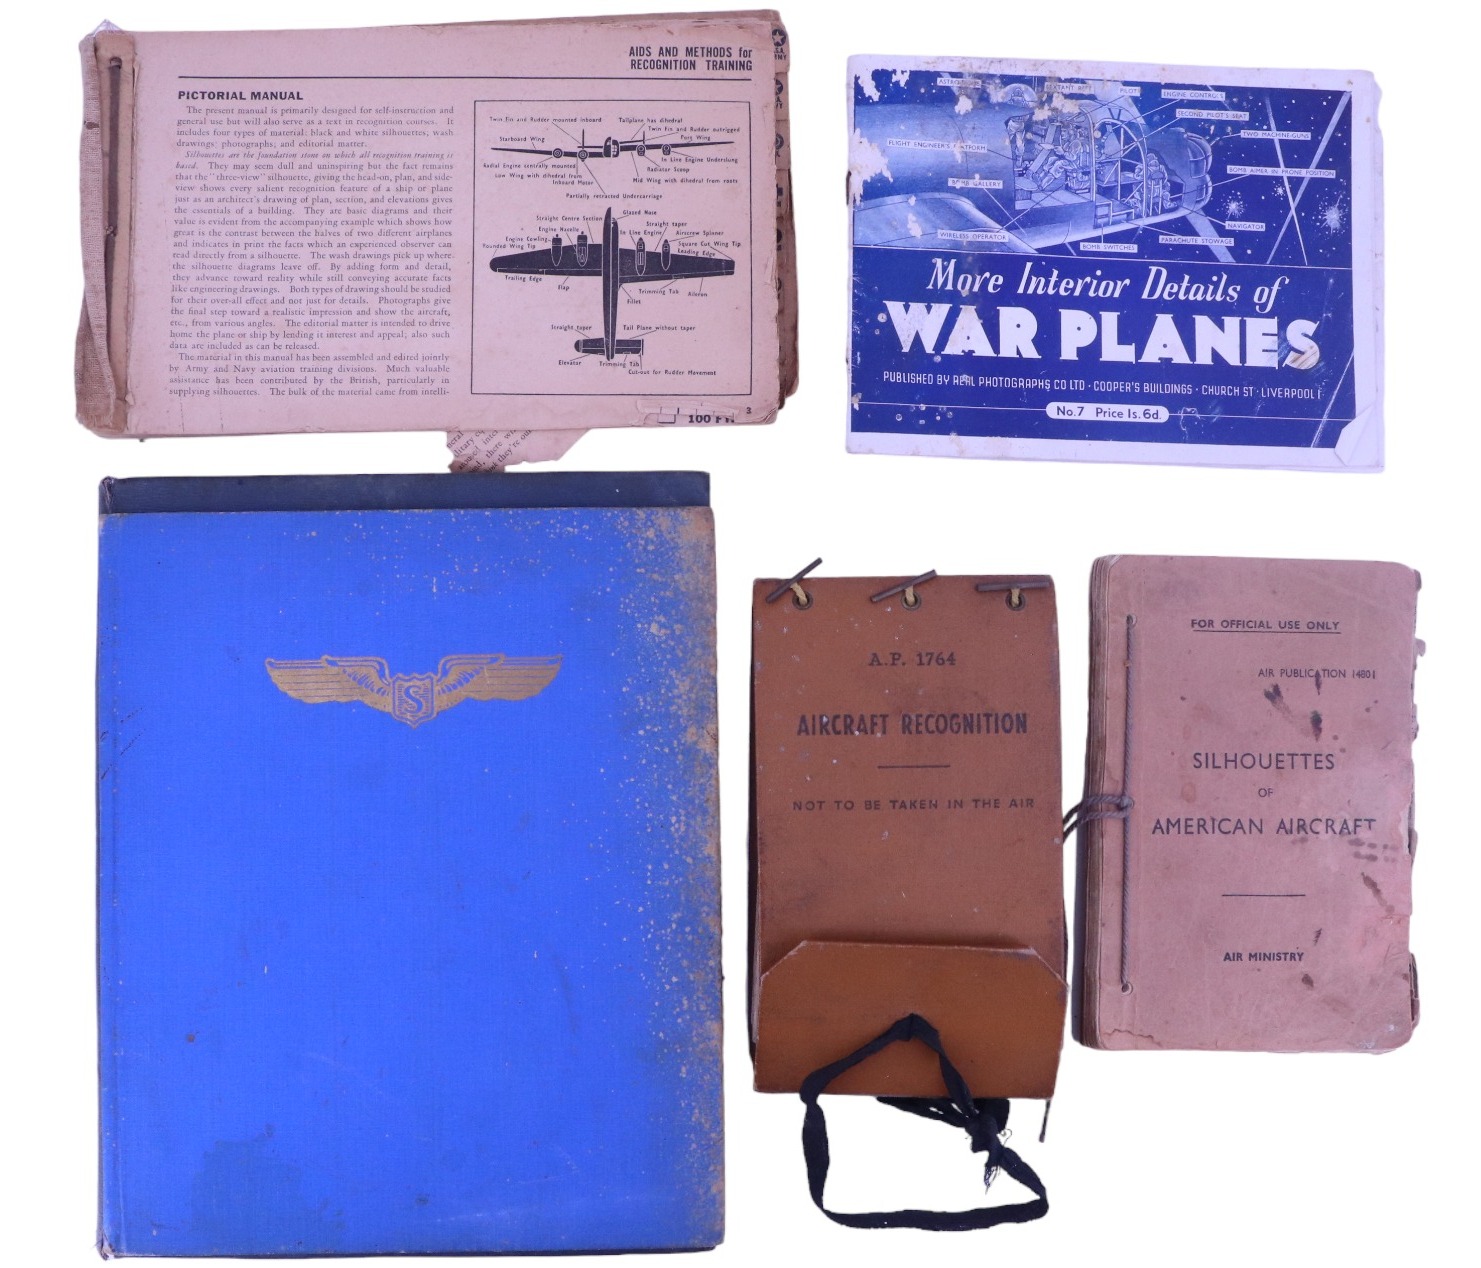 [ Military aircraft / aviation / RAF ] Second World War RAF aircraft recognition handbooks, a